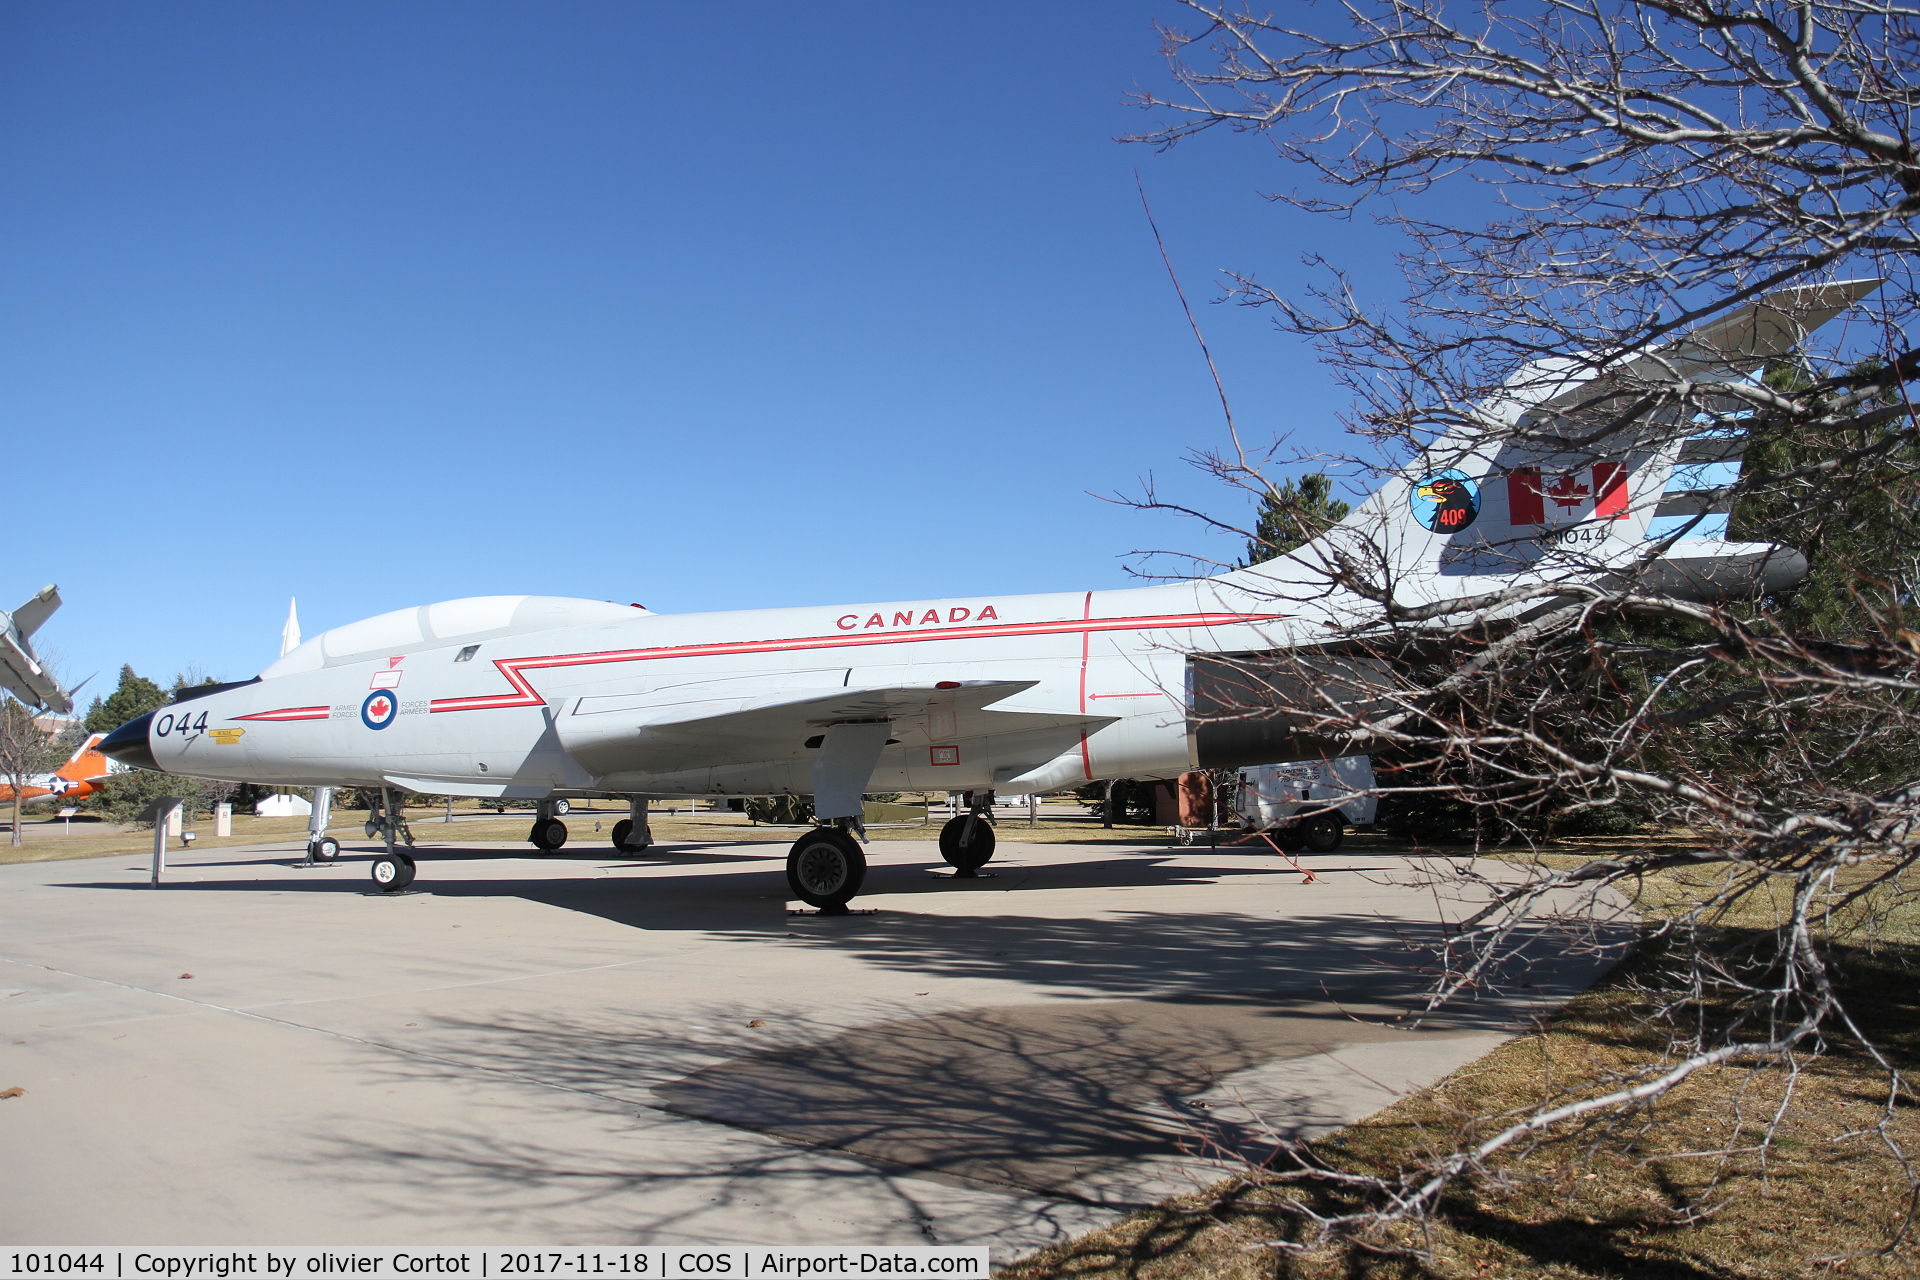 101044, 1957 McDonnell CF-101B Voodoo C/N 559, winter in Colorado